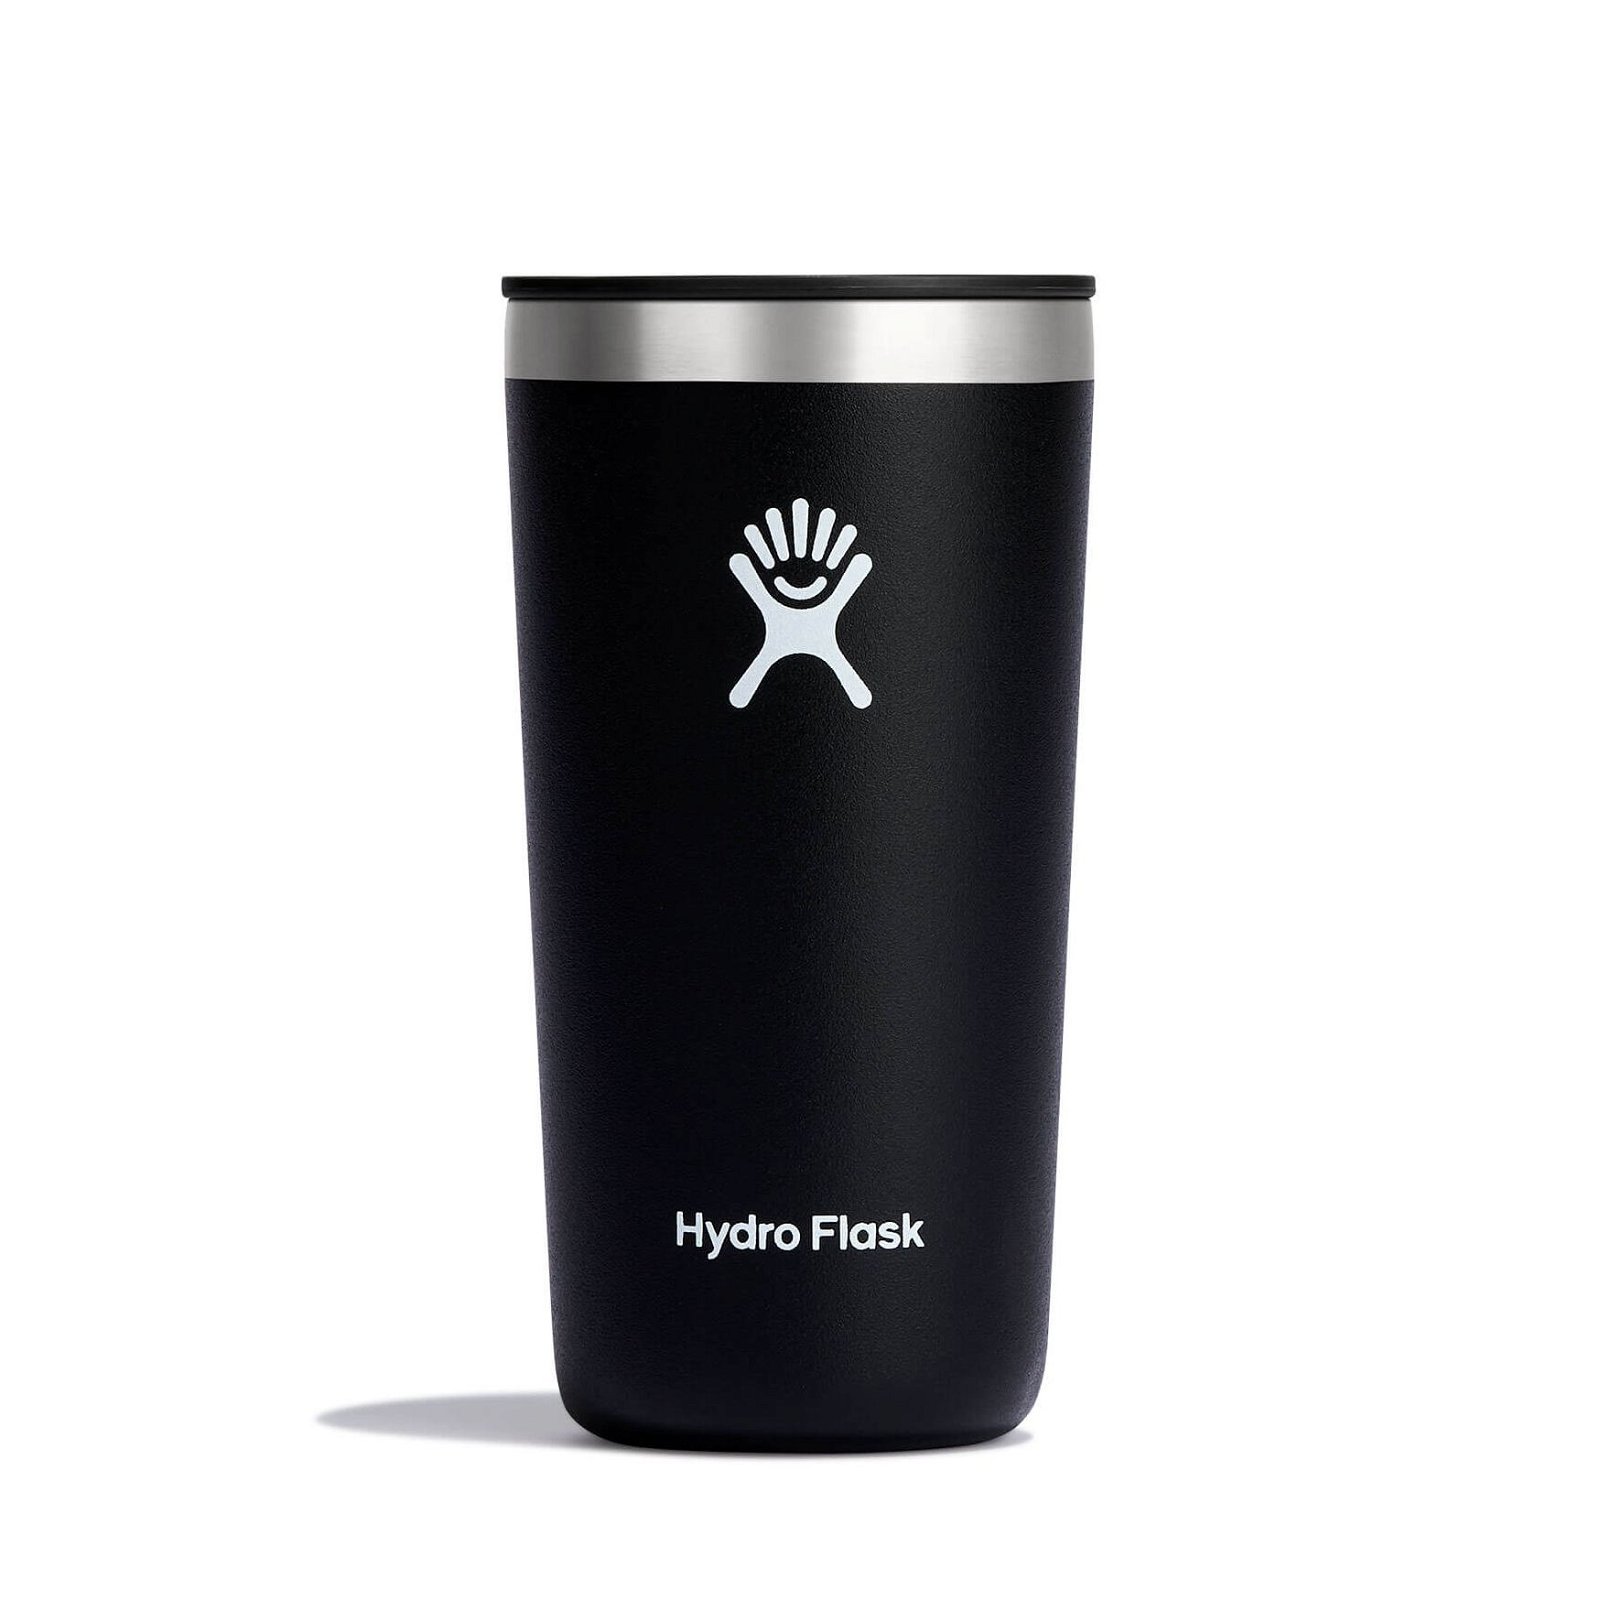 Hydro Flask 12 oz All Round Tumbler